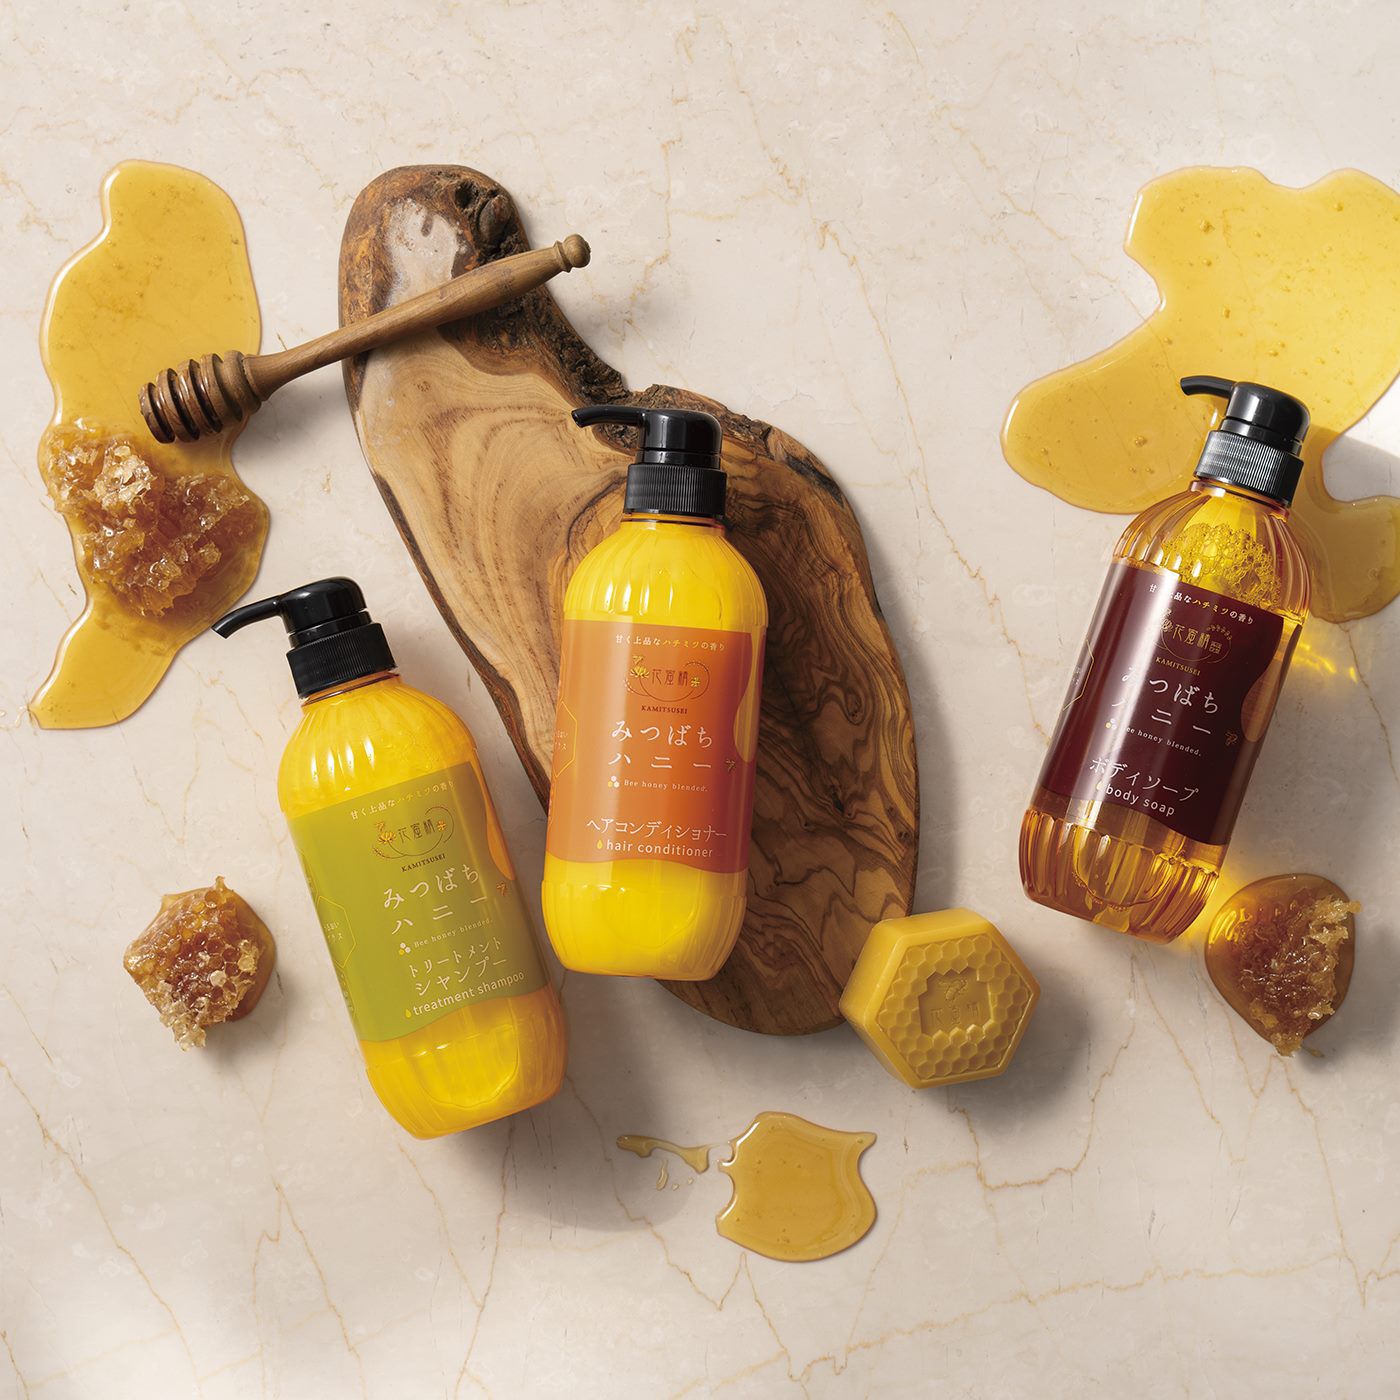 BEAUTY PROJECT|花蜜精　みつばちハニー　ヘアコンディショナーの会|肌や髪をしっとりとした質感に導いてくれる花蜜精シリーズ。ぜひお試しください。